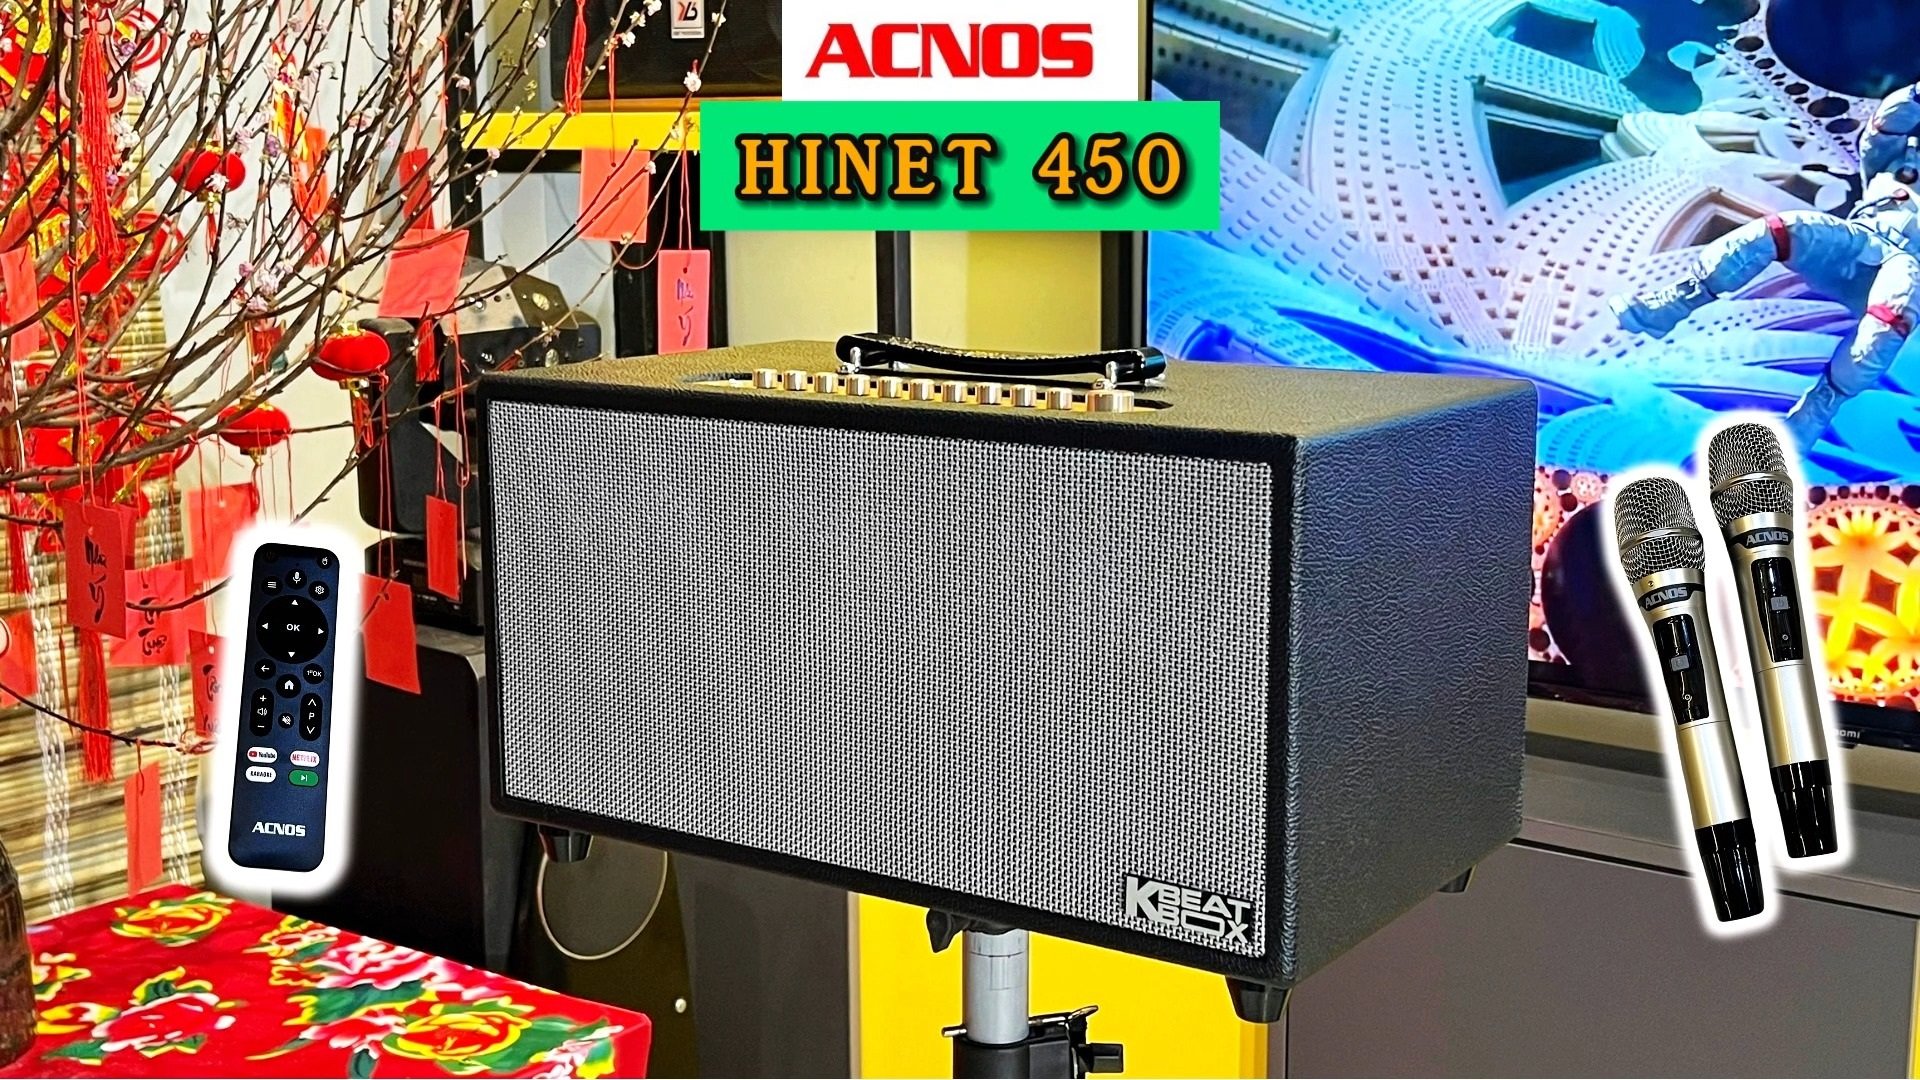 Loa ACNOS HiNet 450 